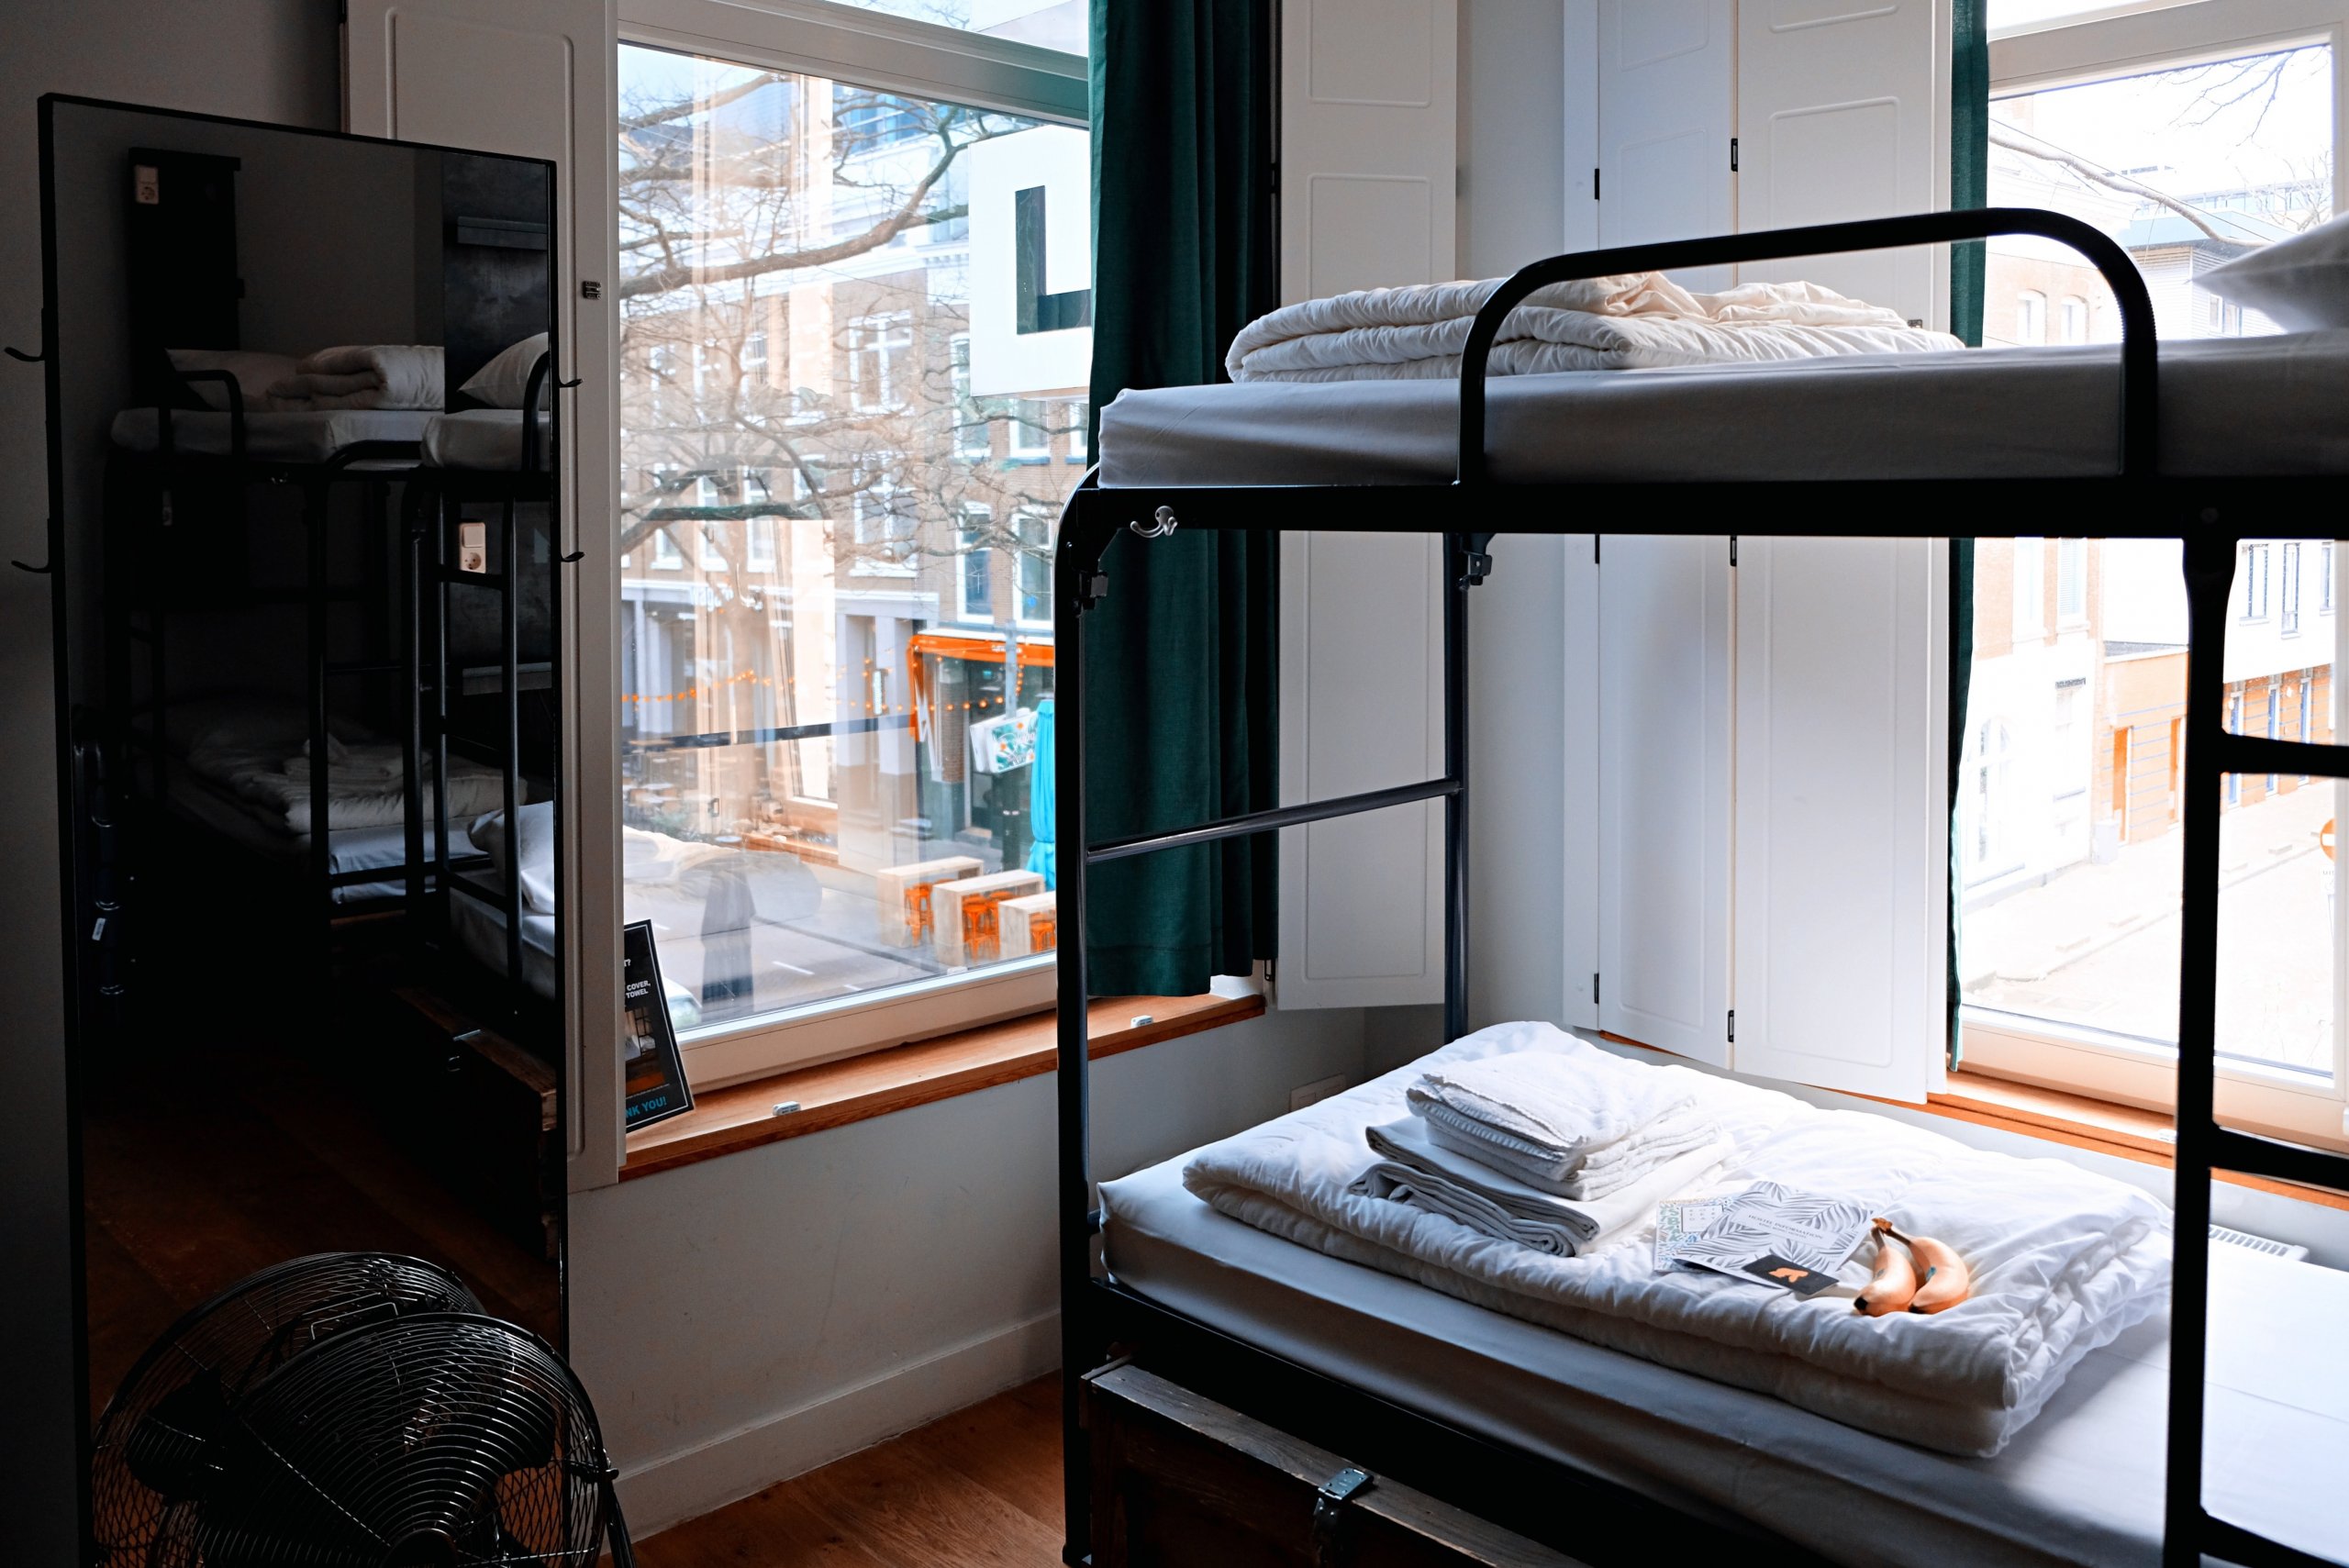 Hostel com camas beliches, perto de parede. Imagem disponível no Unsplash